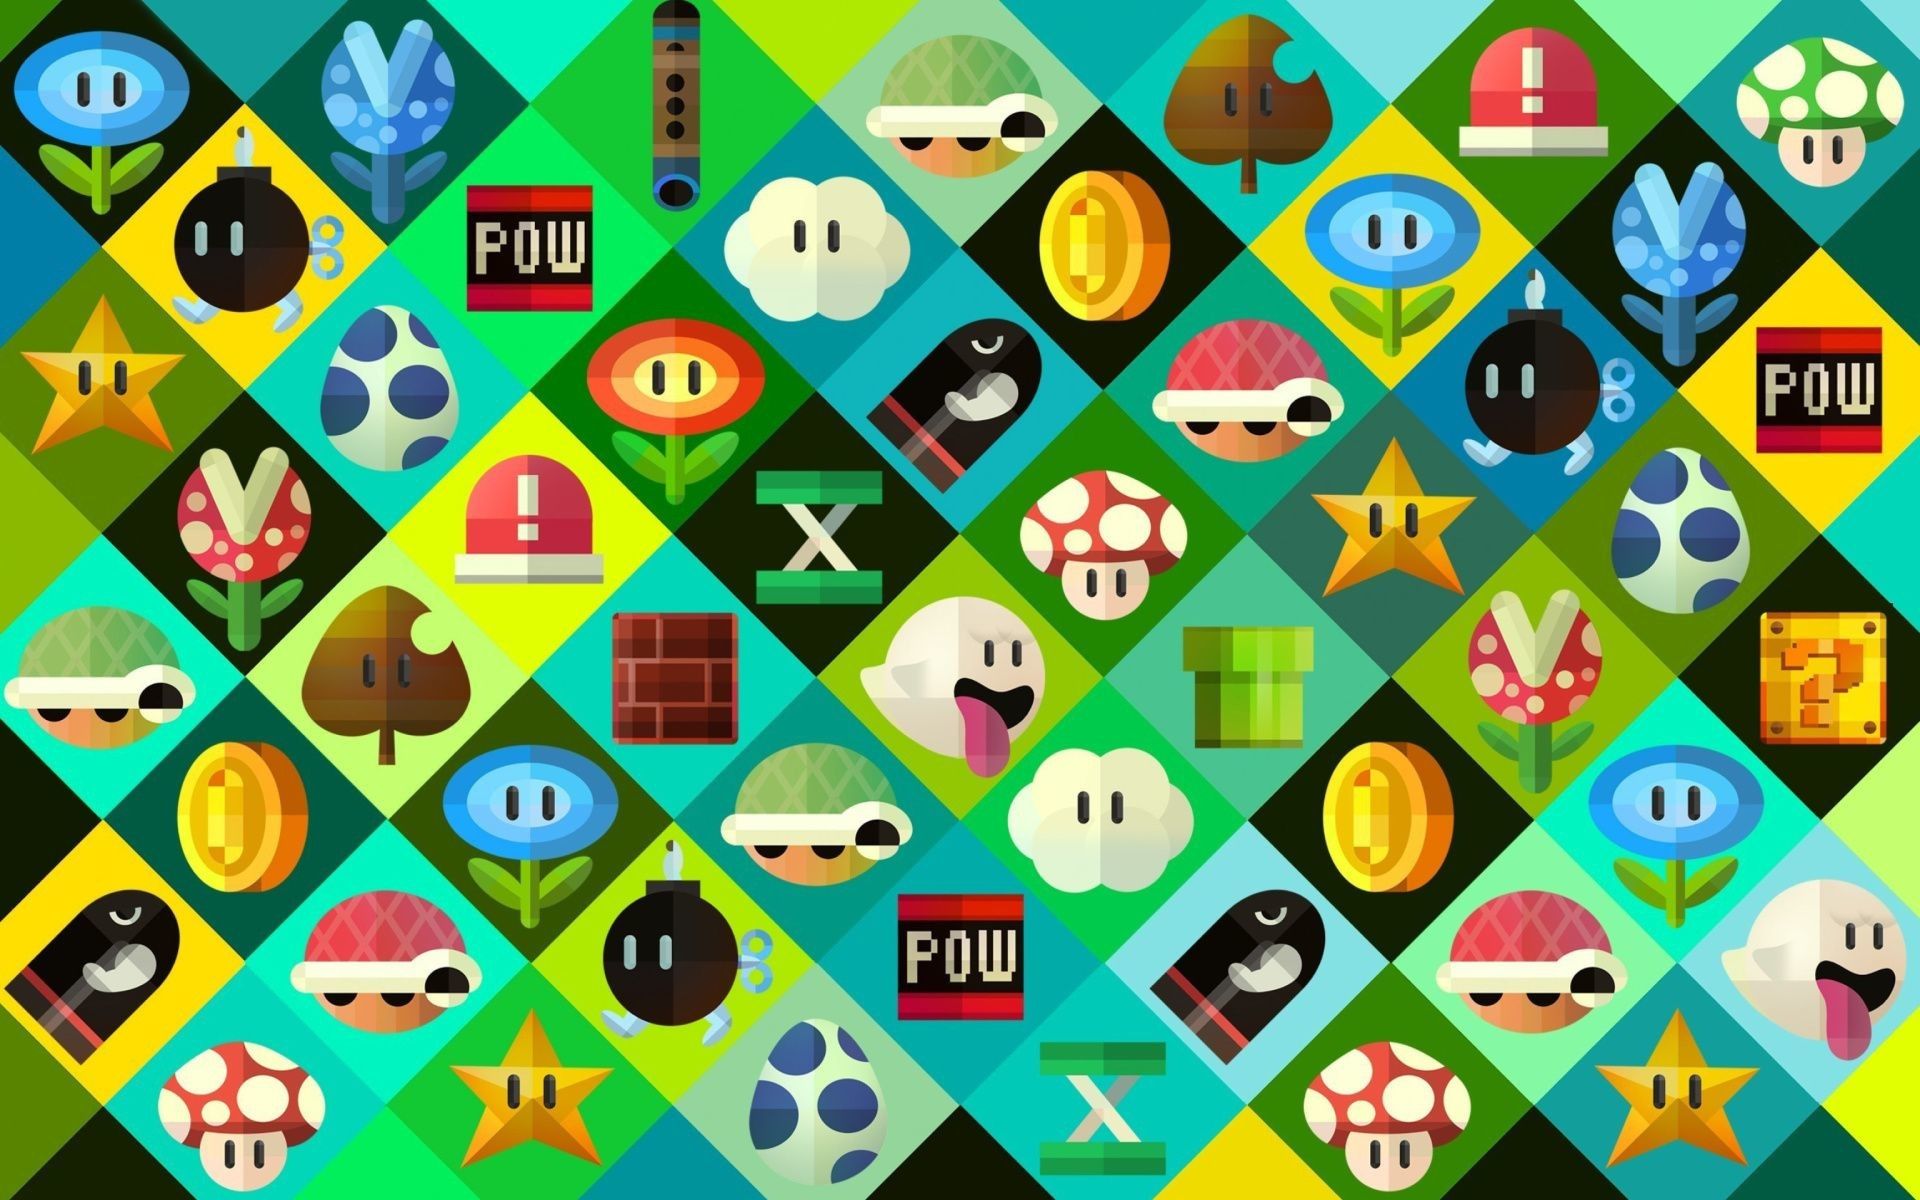 Nintendo Desktop Wallpapers